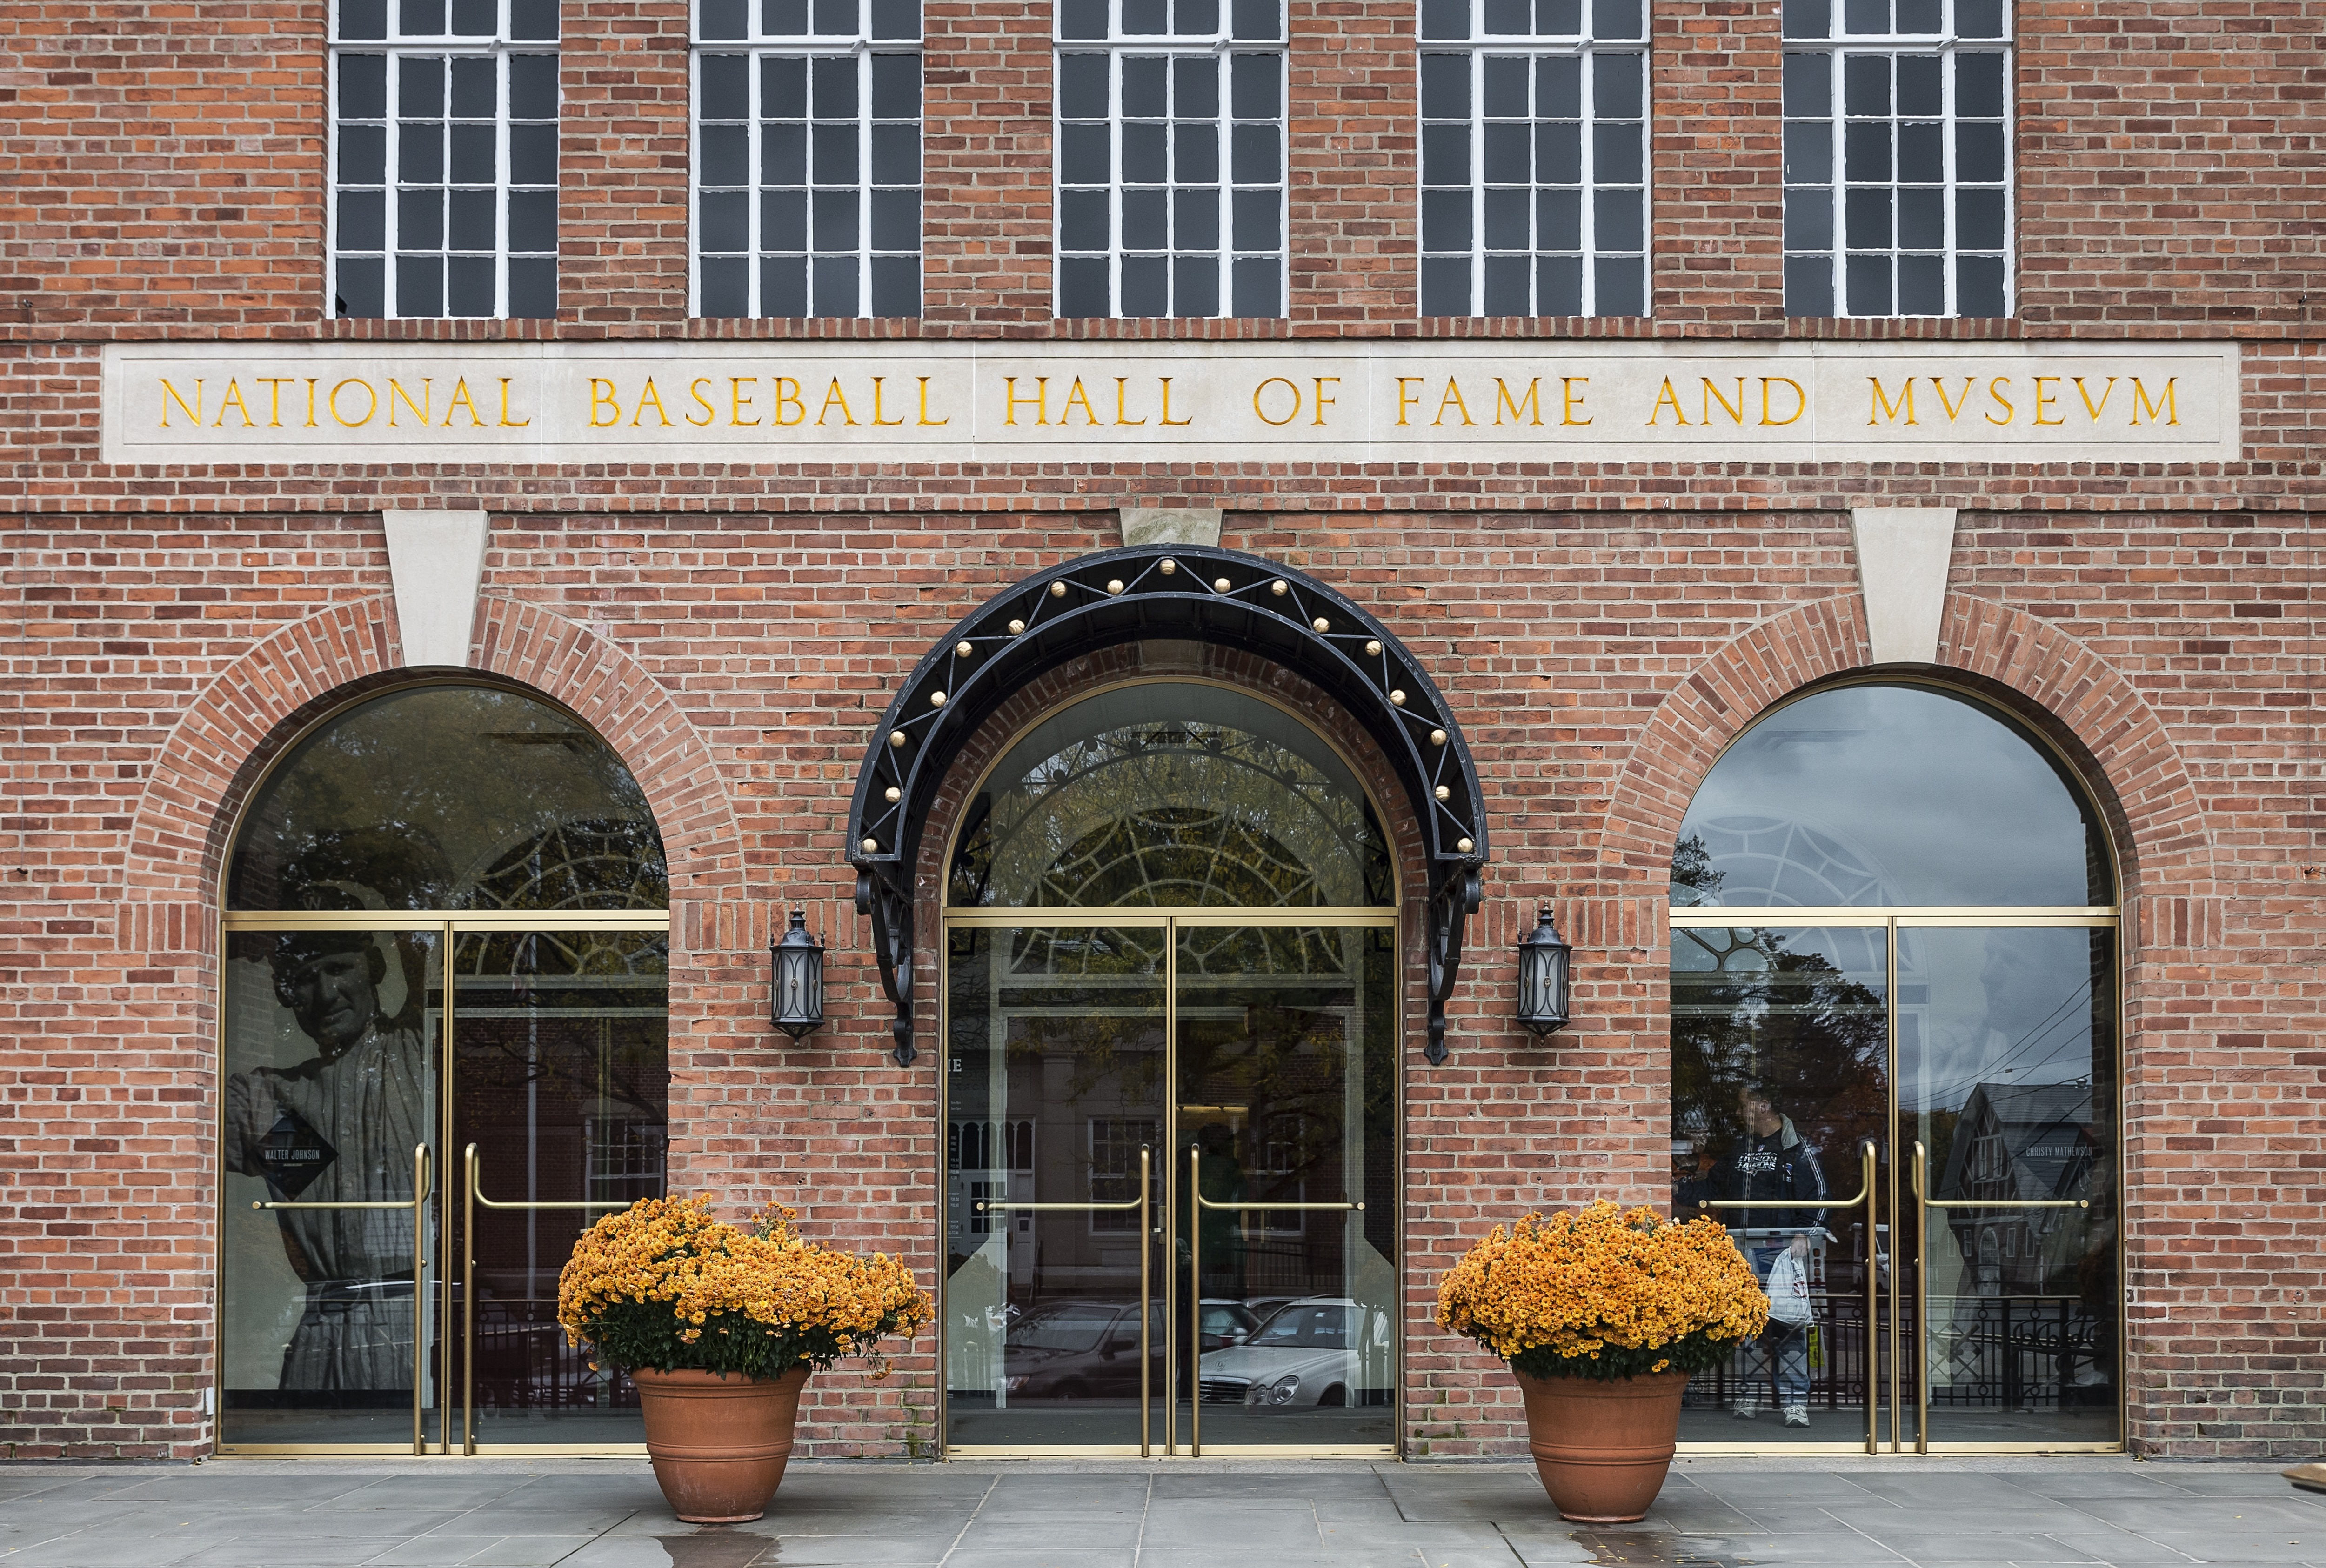 National Baseball Hall of Fame and Museum...